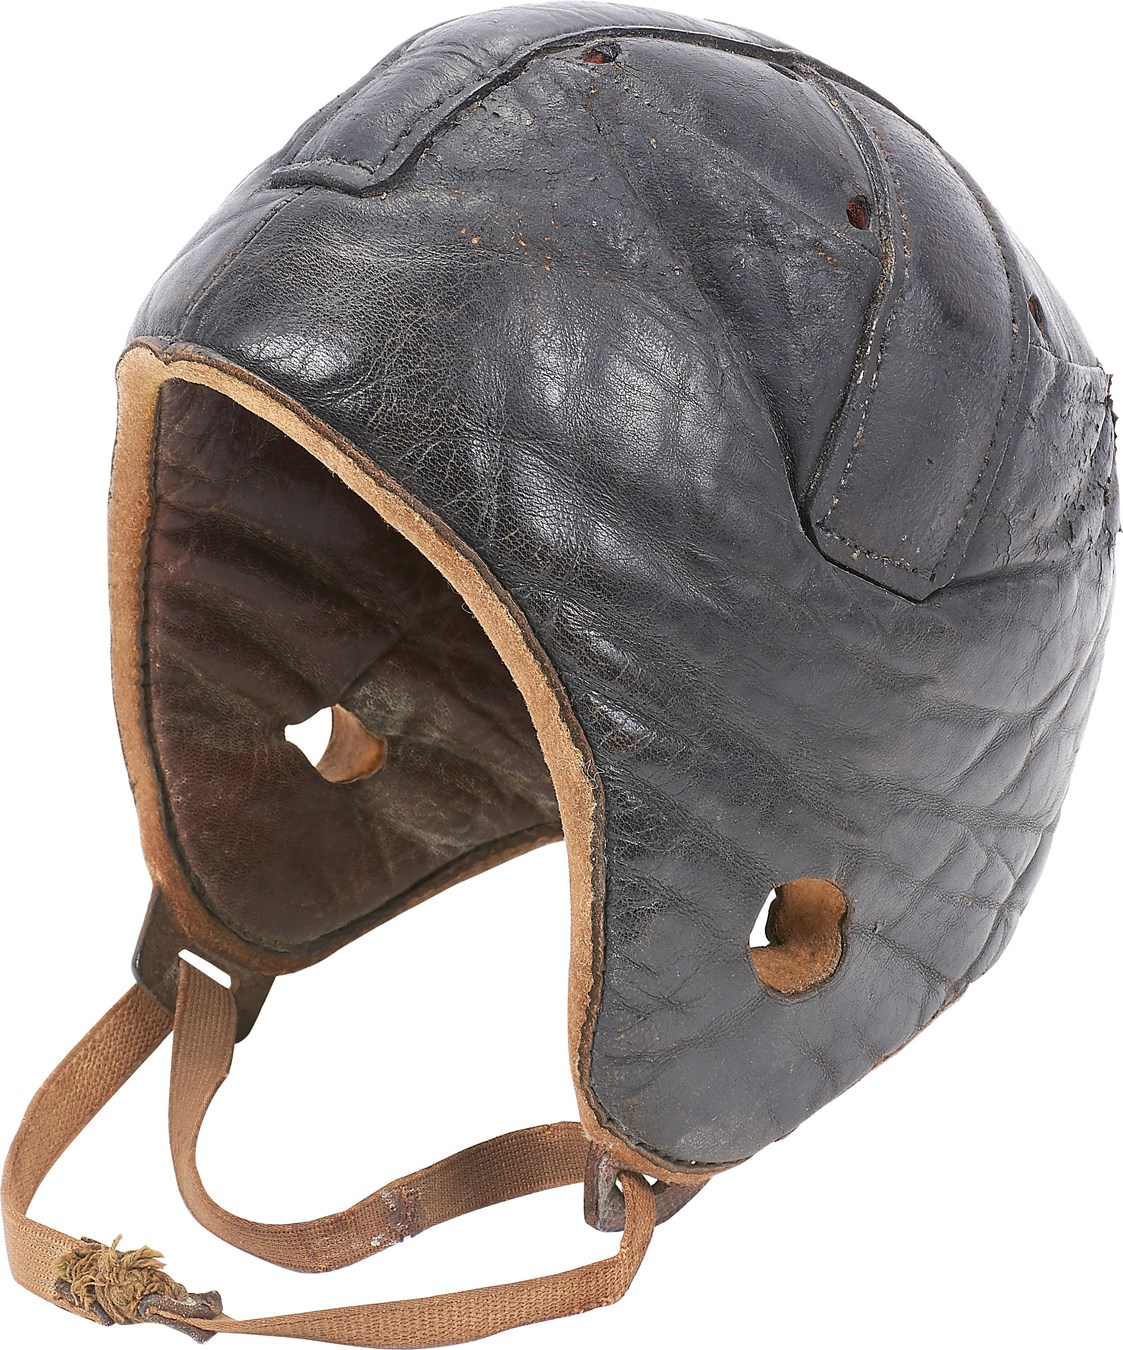 - Early Harvard Style Football Helmet